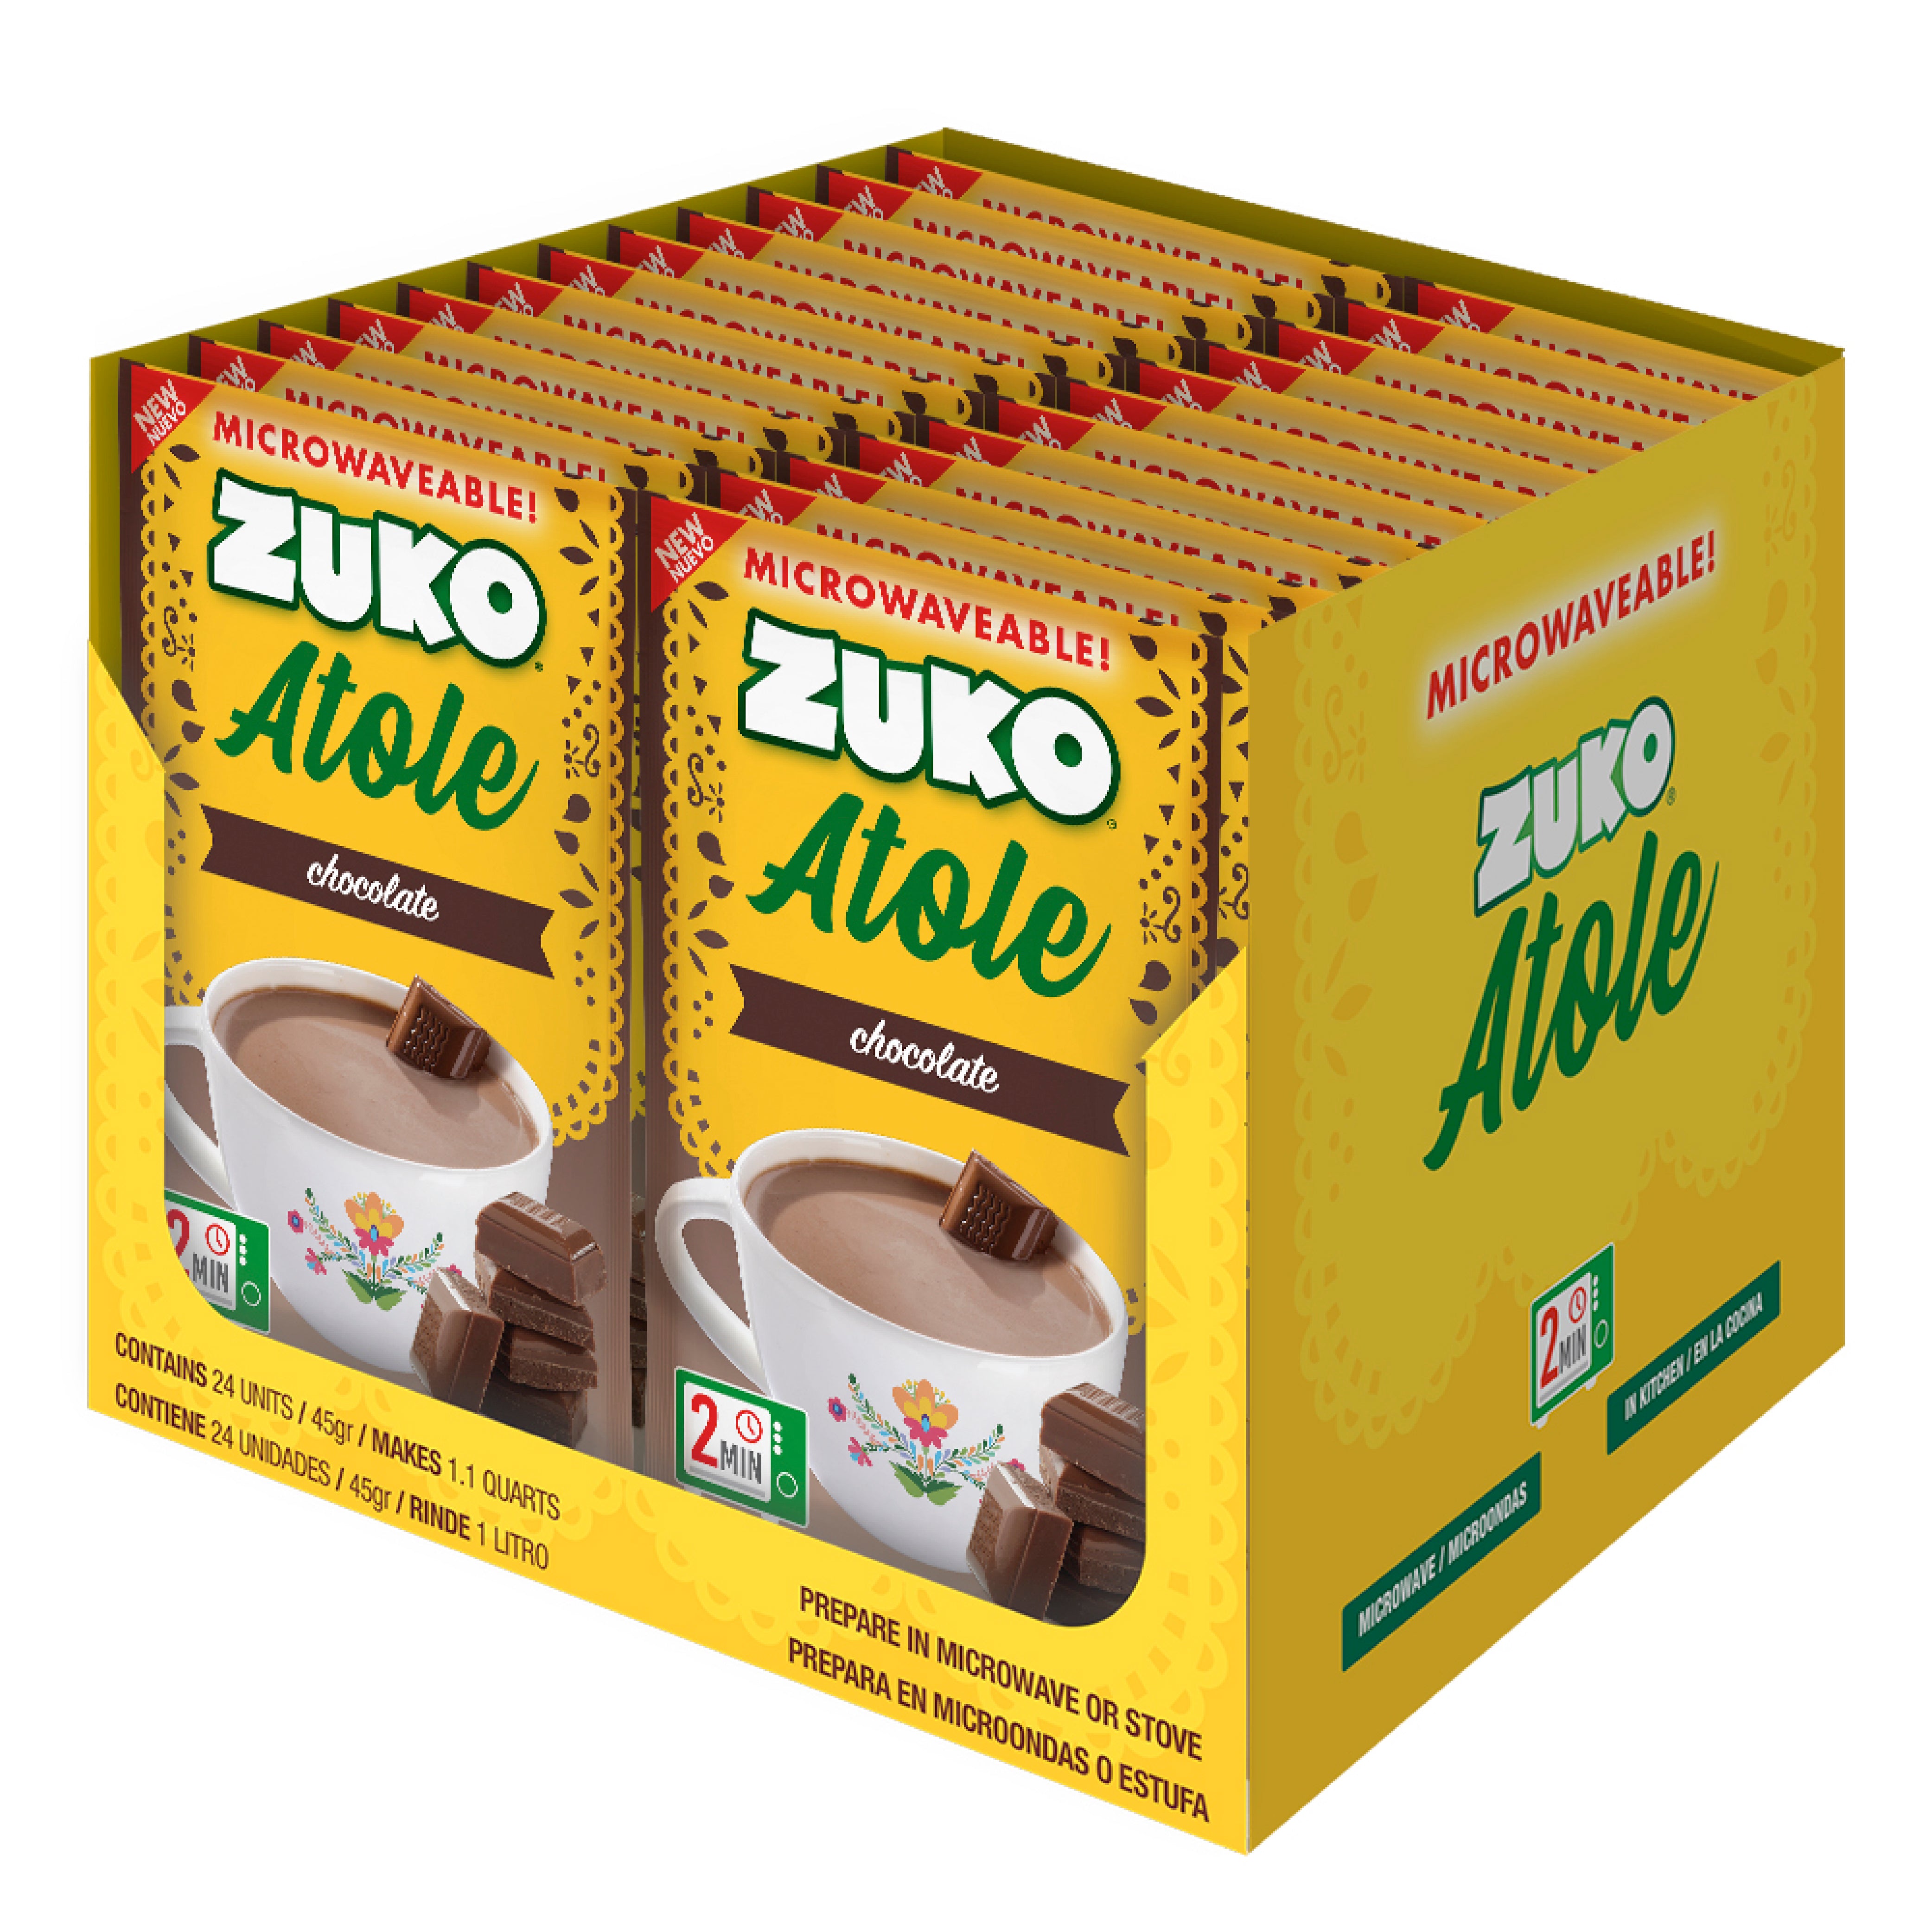 Zuko Atole, Chocolate Display, 24 ct, 1.6 Oz